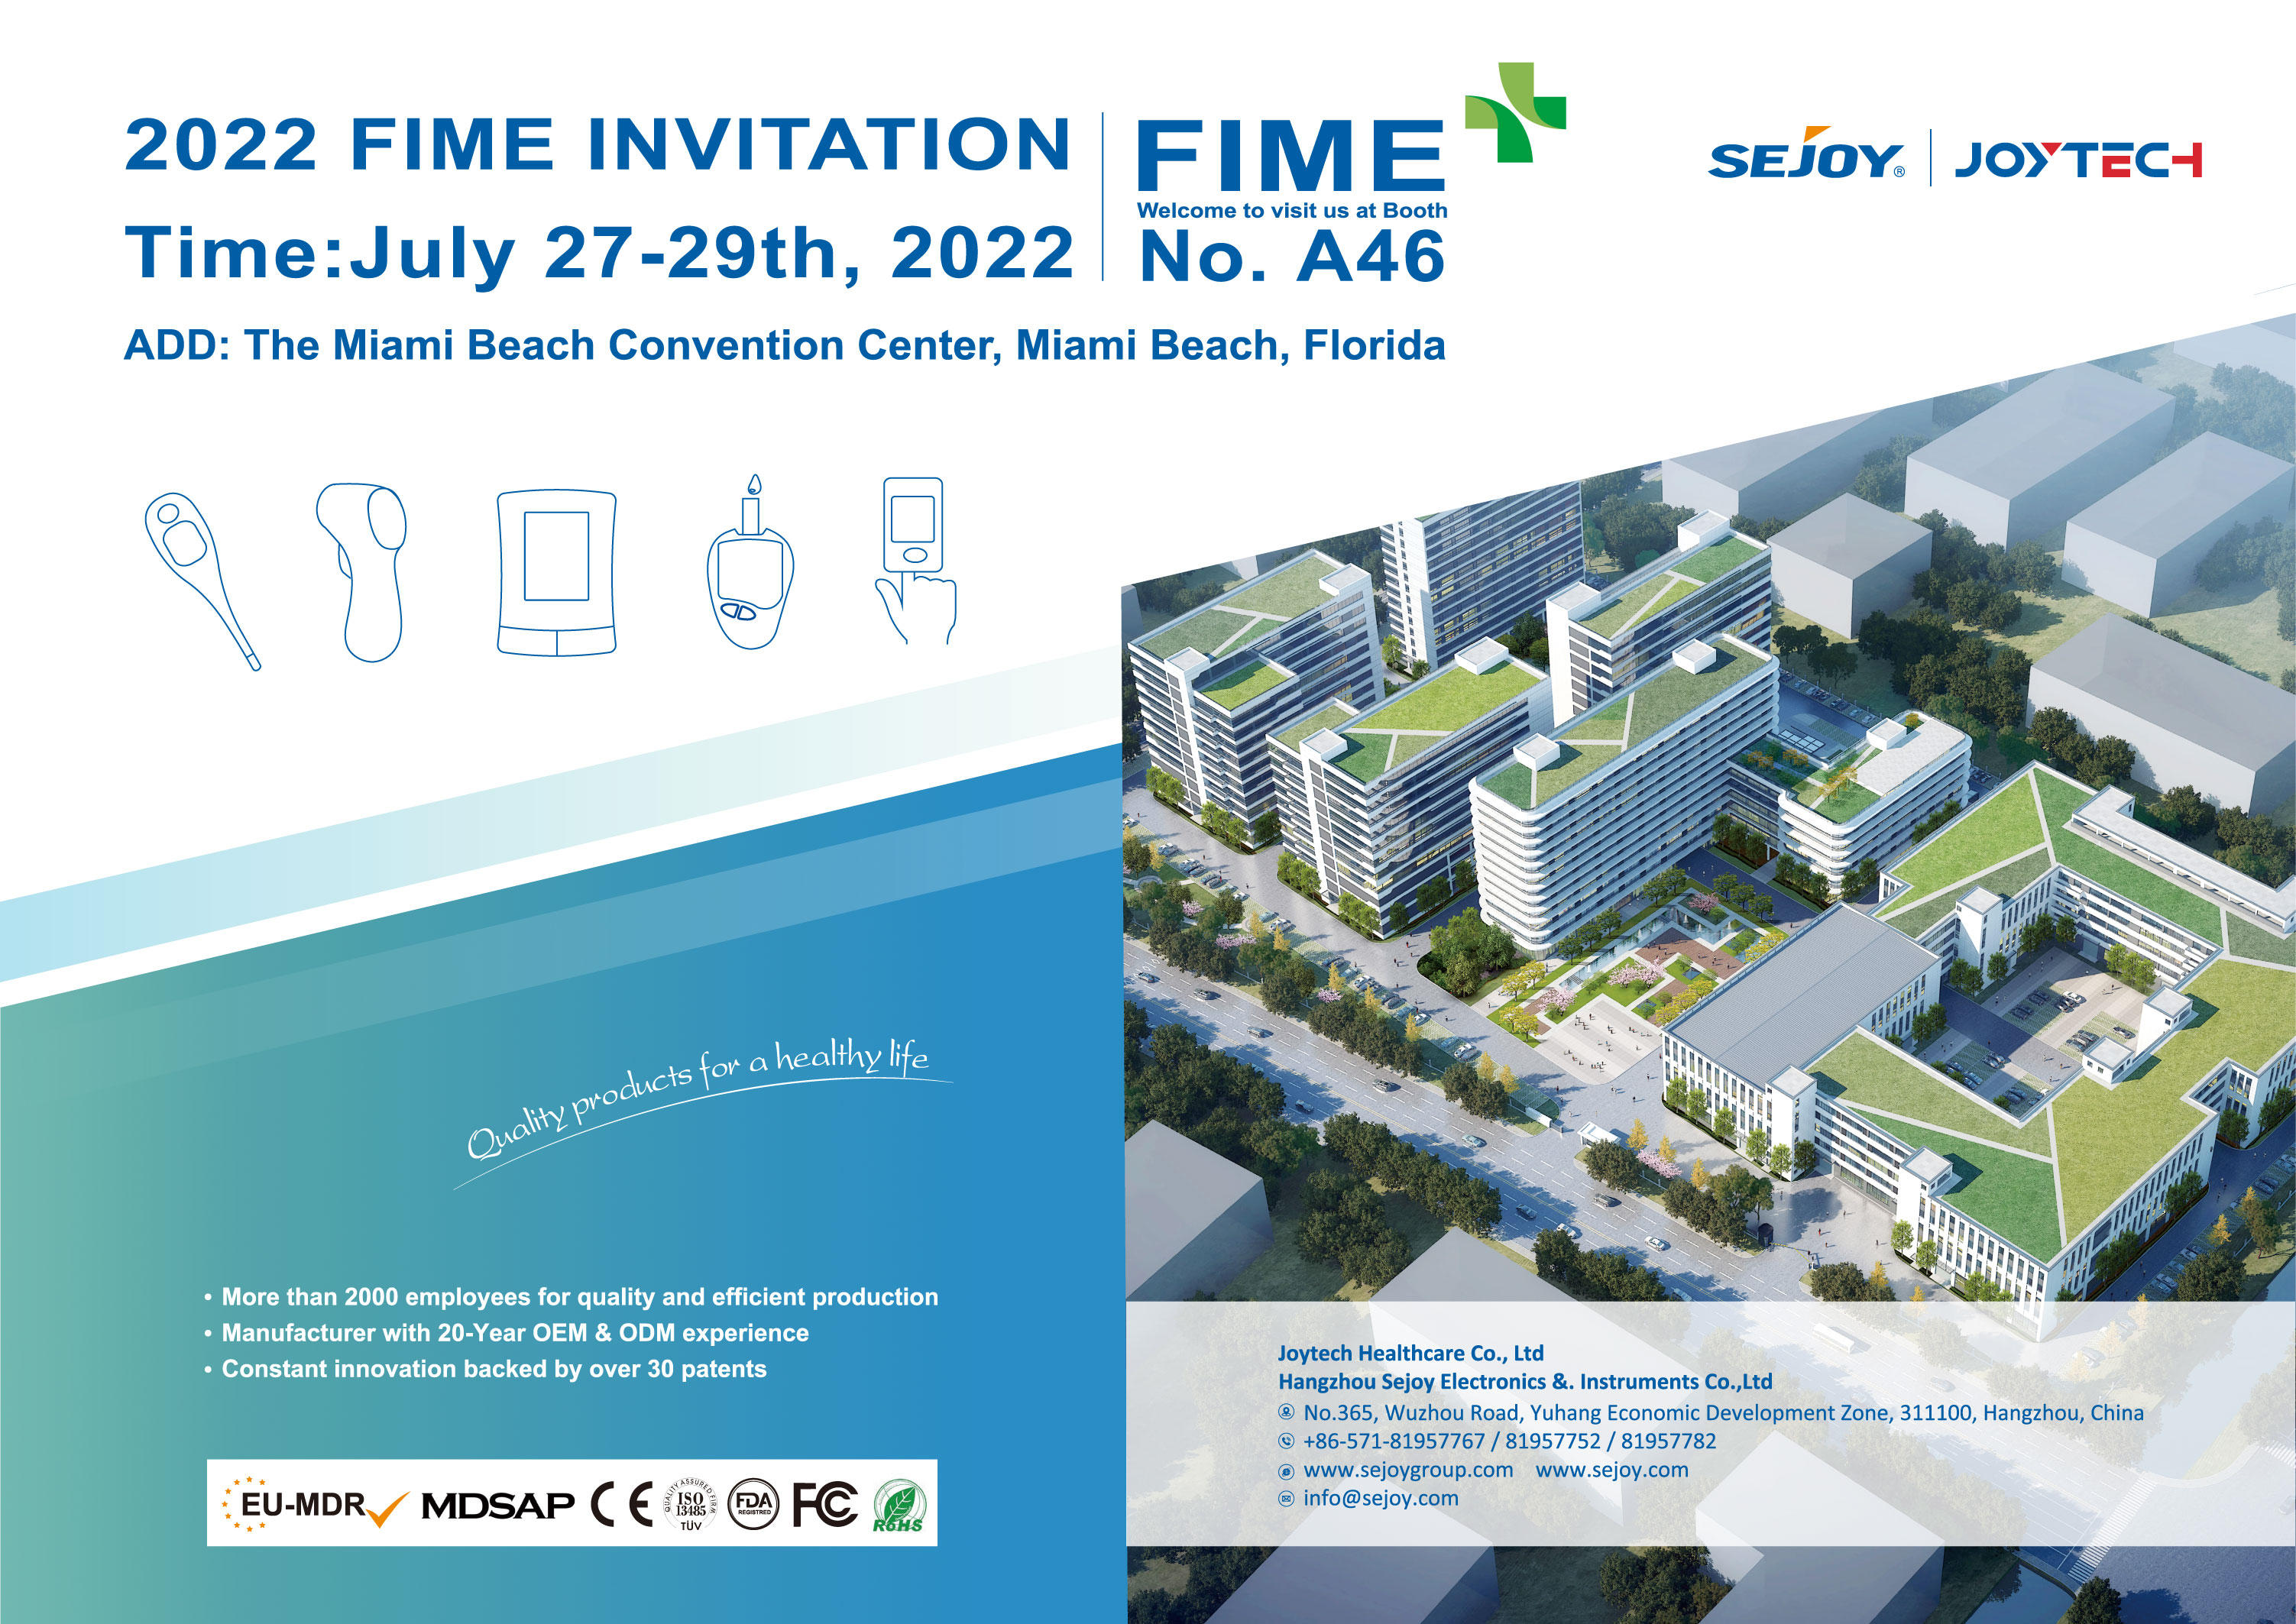 FIME 2022 આમંત્રણ - સેજોય ગ્રુપ બૂથ A46 માં આપનું સ્વાગત છે